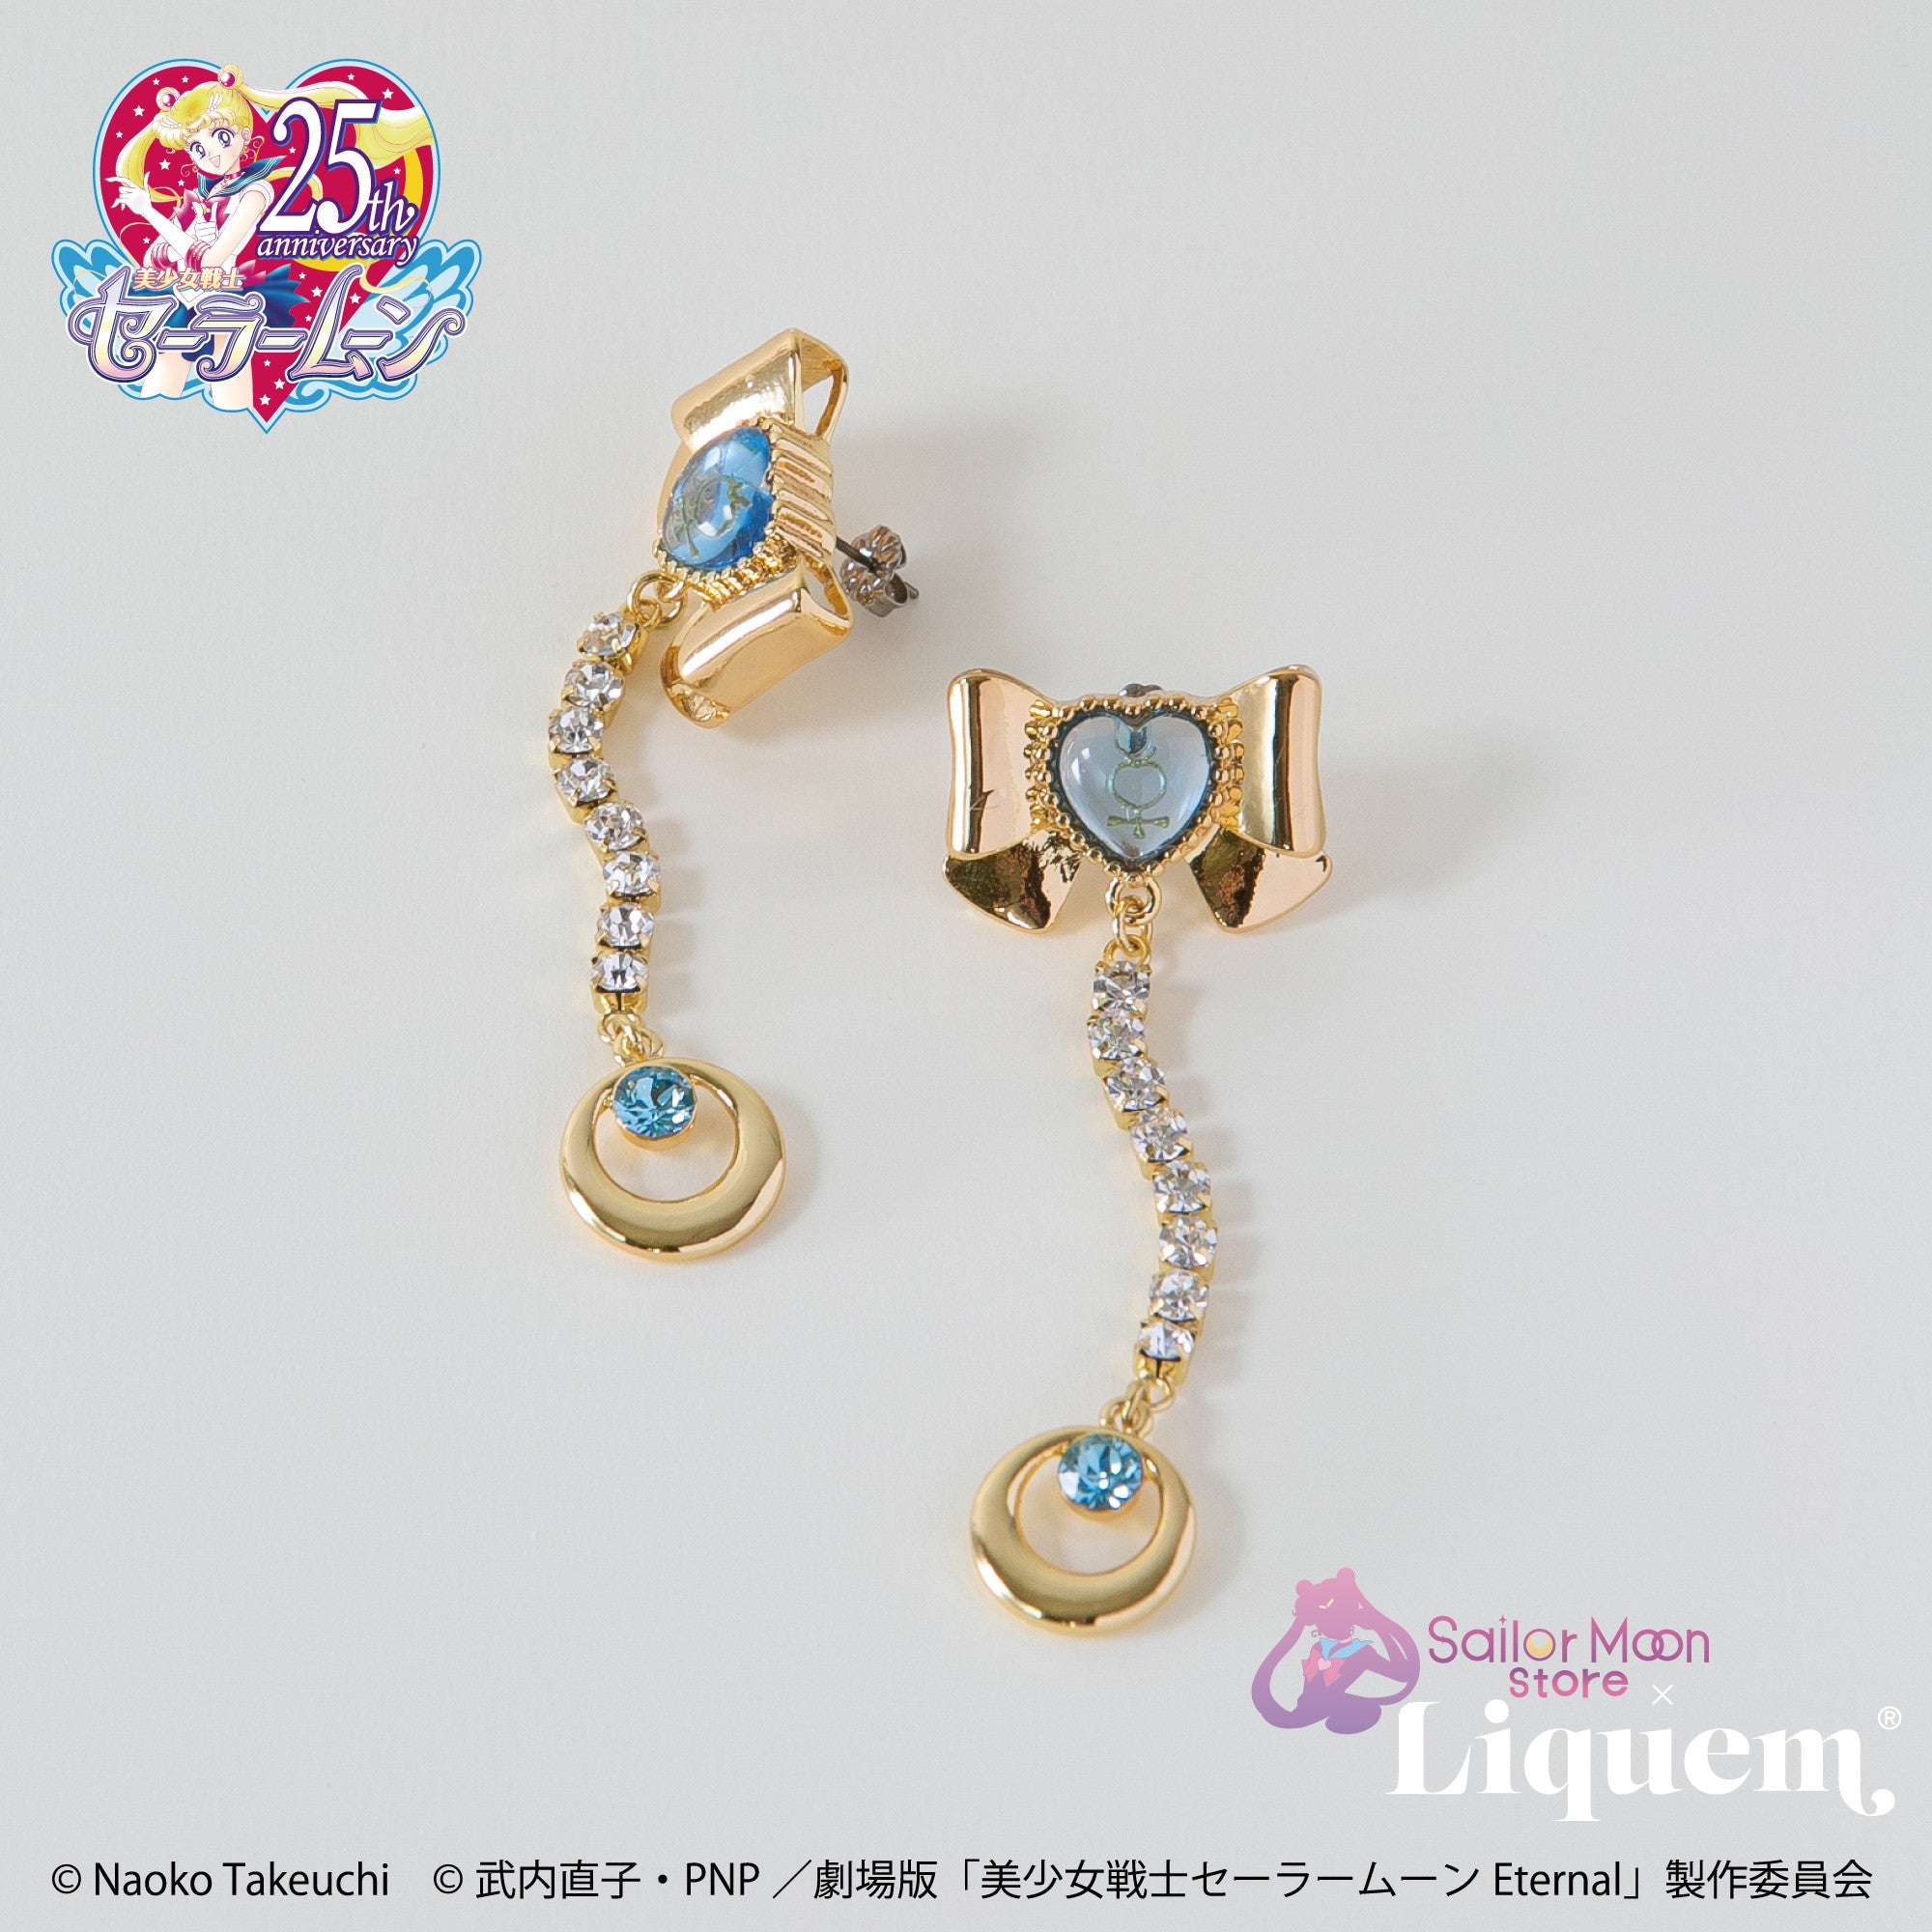 Sailor Moon store x Liquem / スーパーセーラーマーキュリーリボン ...